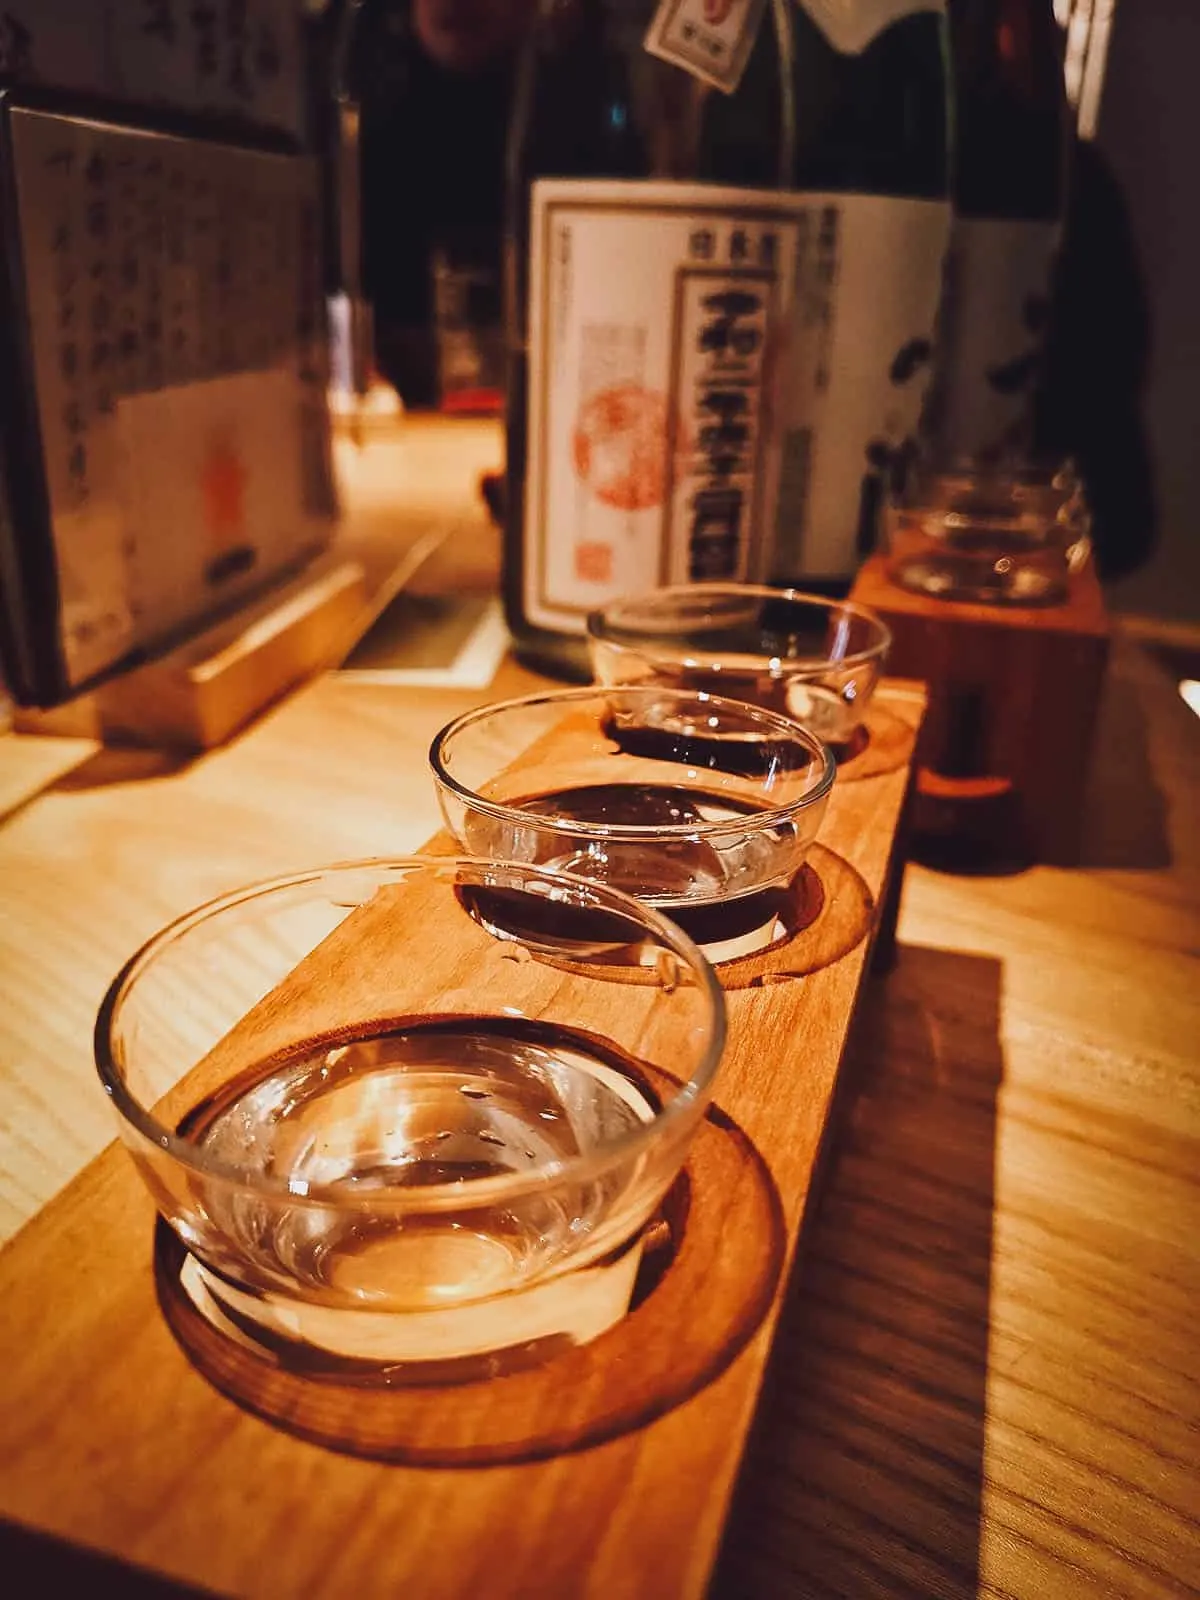 Flight of sake